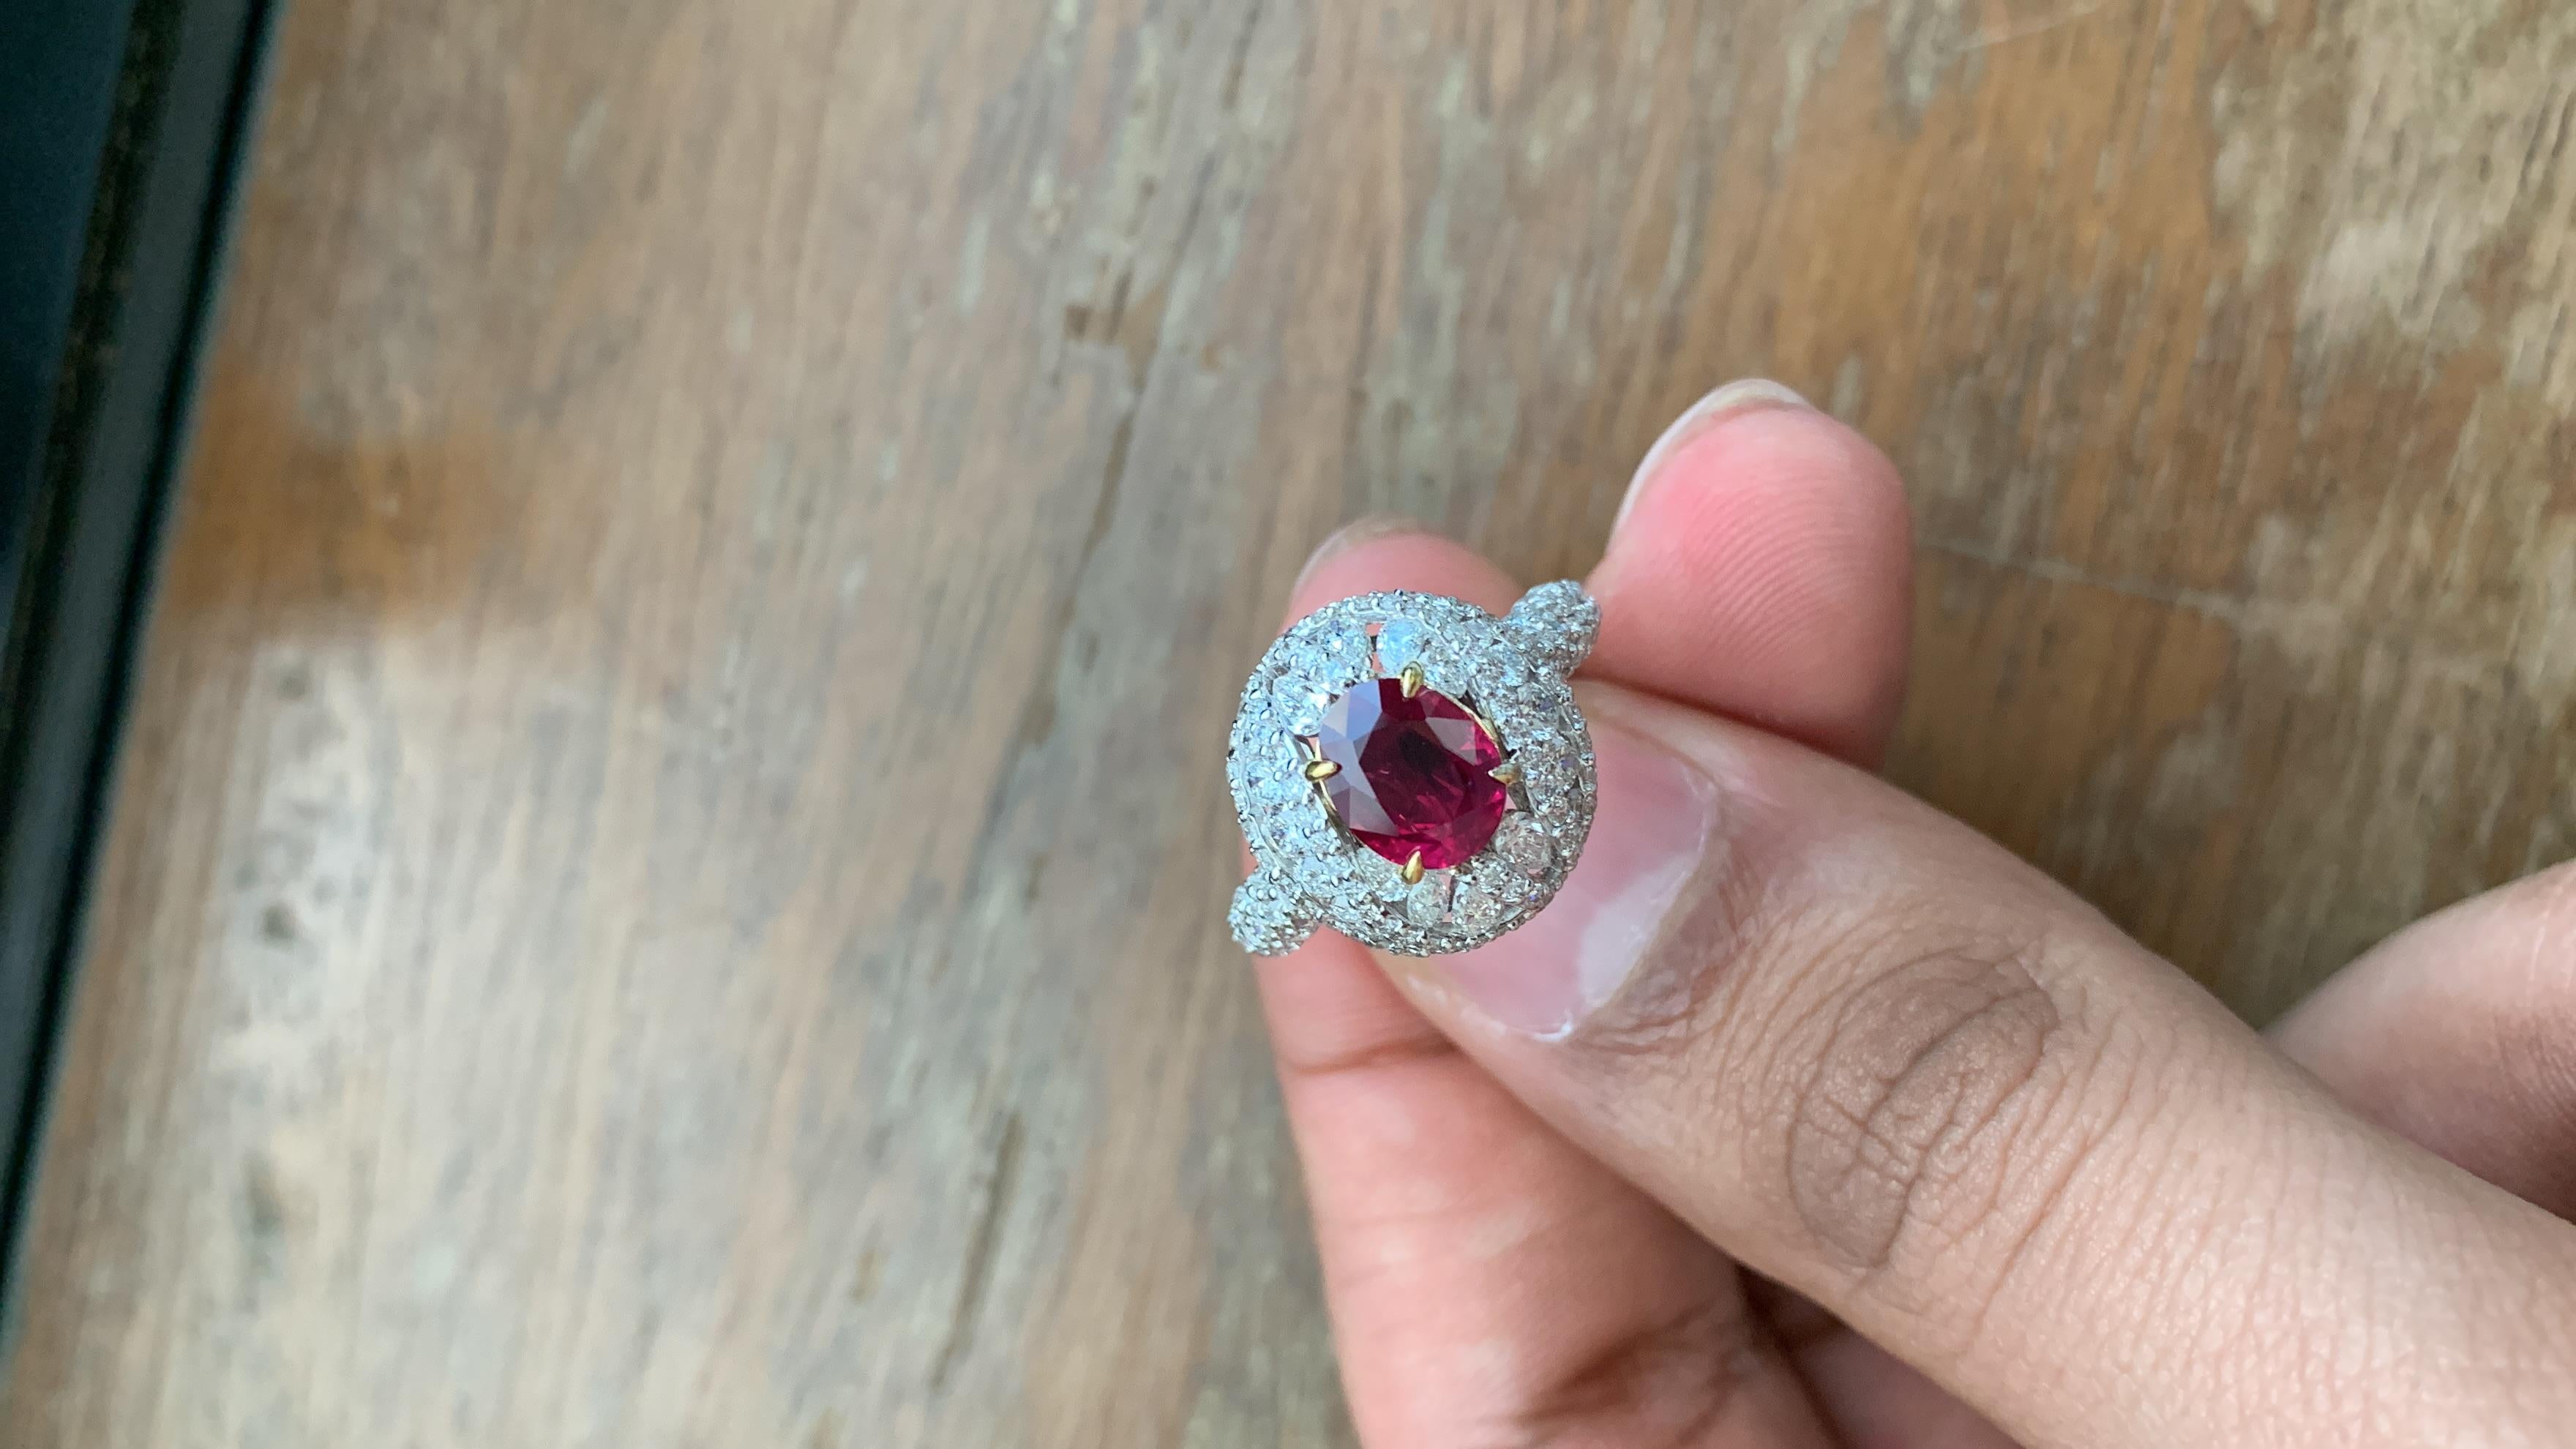 Une toute nouvelle bague en rubis fabriquée à la main par Rewa Jewell. La pierre centrale de la bague est un rubis birman de 1,83 carat certifié par Gem Research Swisslab (GRS) comme naturel, non chauffé, 